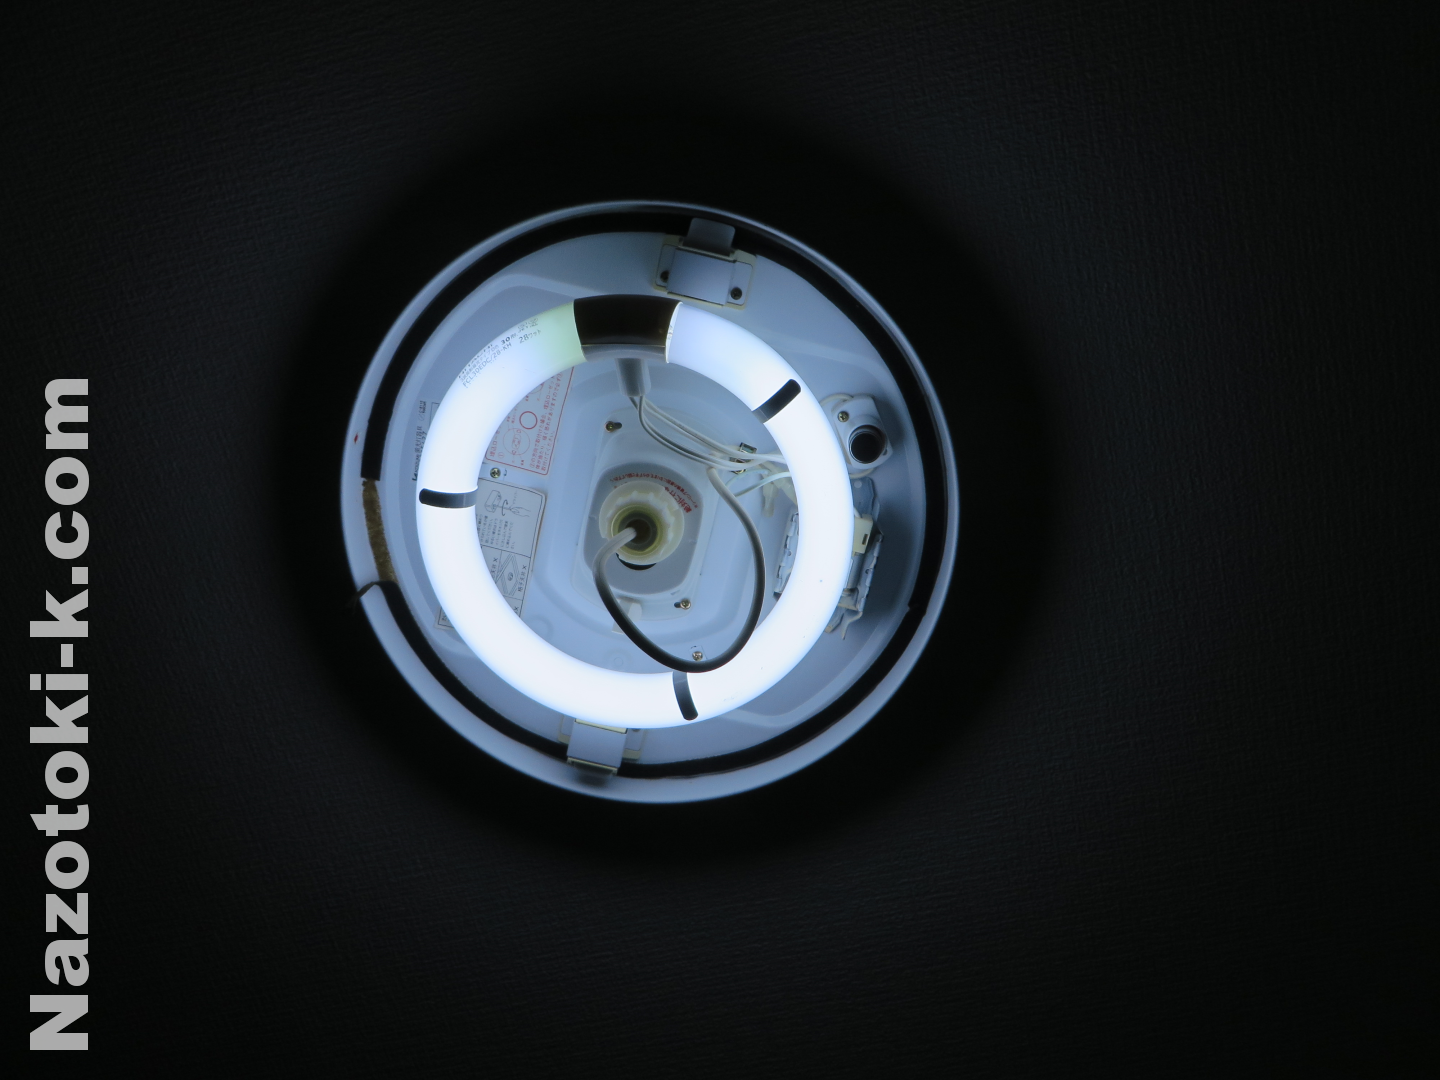 内玄関照明をアイリスオーヤマ LED 30形 丸型蛍光灯 LDCL3030SS/N/23-Cに交換